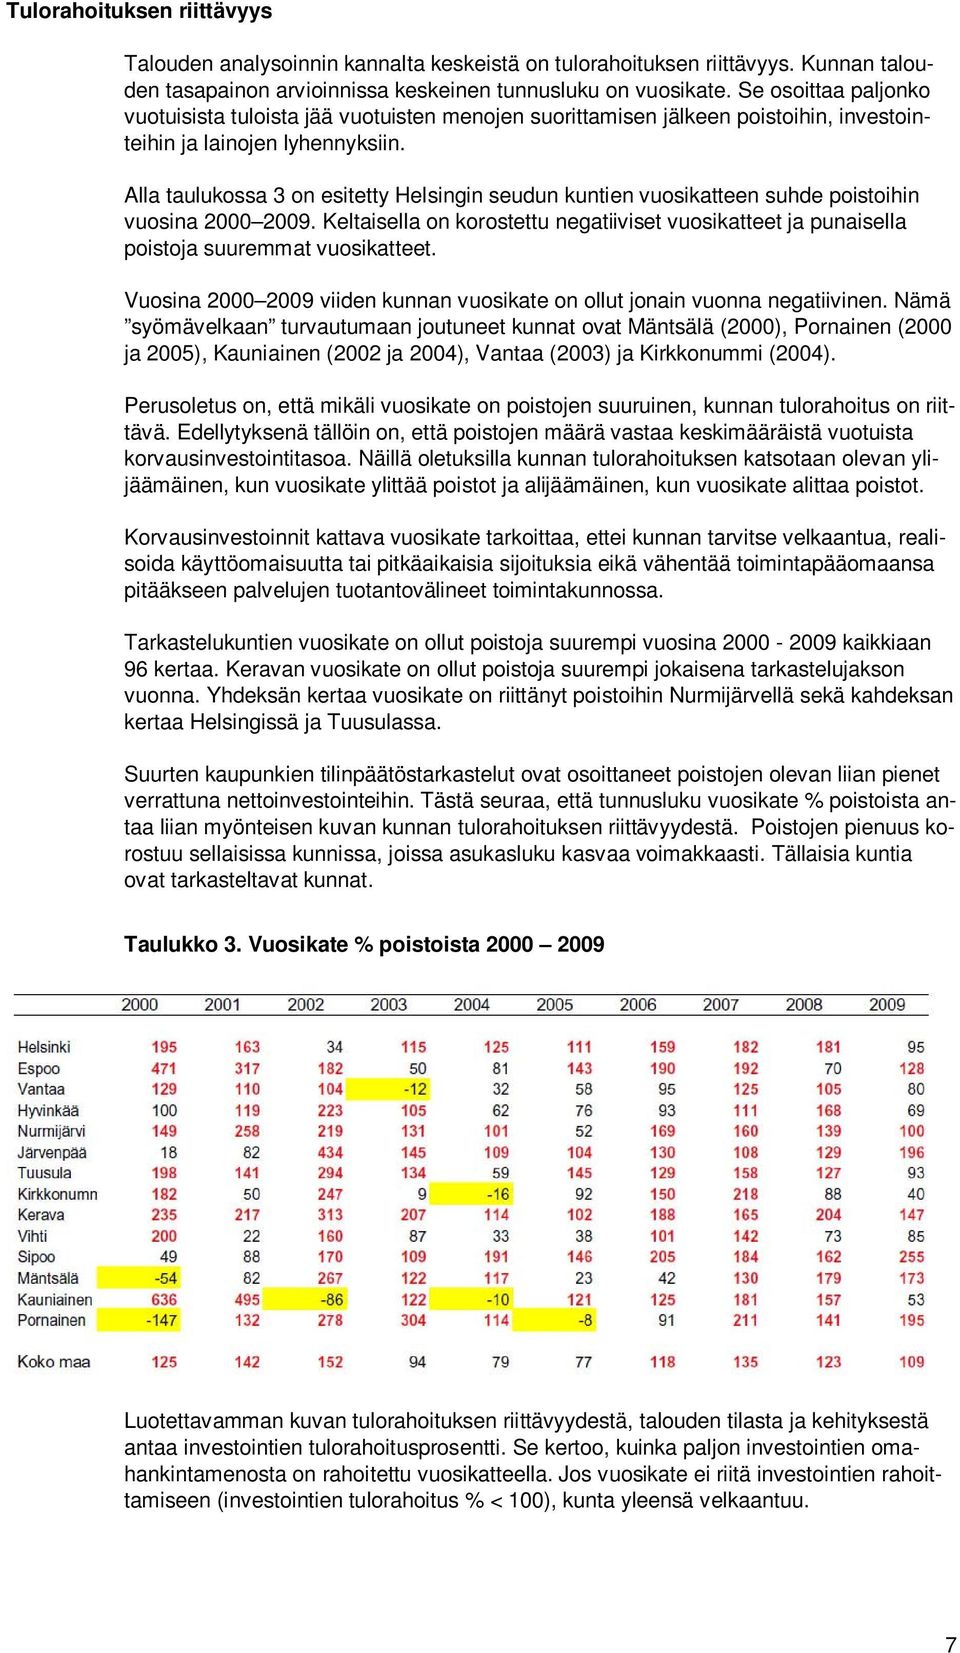 Alla taulukossa 3 on esitetty Helsingin seudun kuntien vuosikatteen suhde poistoihin vuosina 2000 2009.